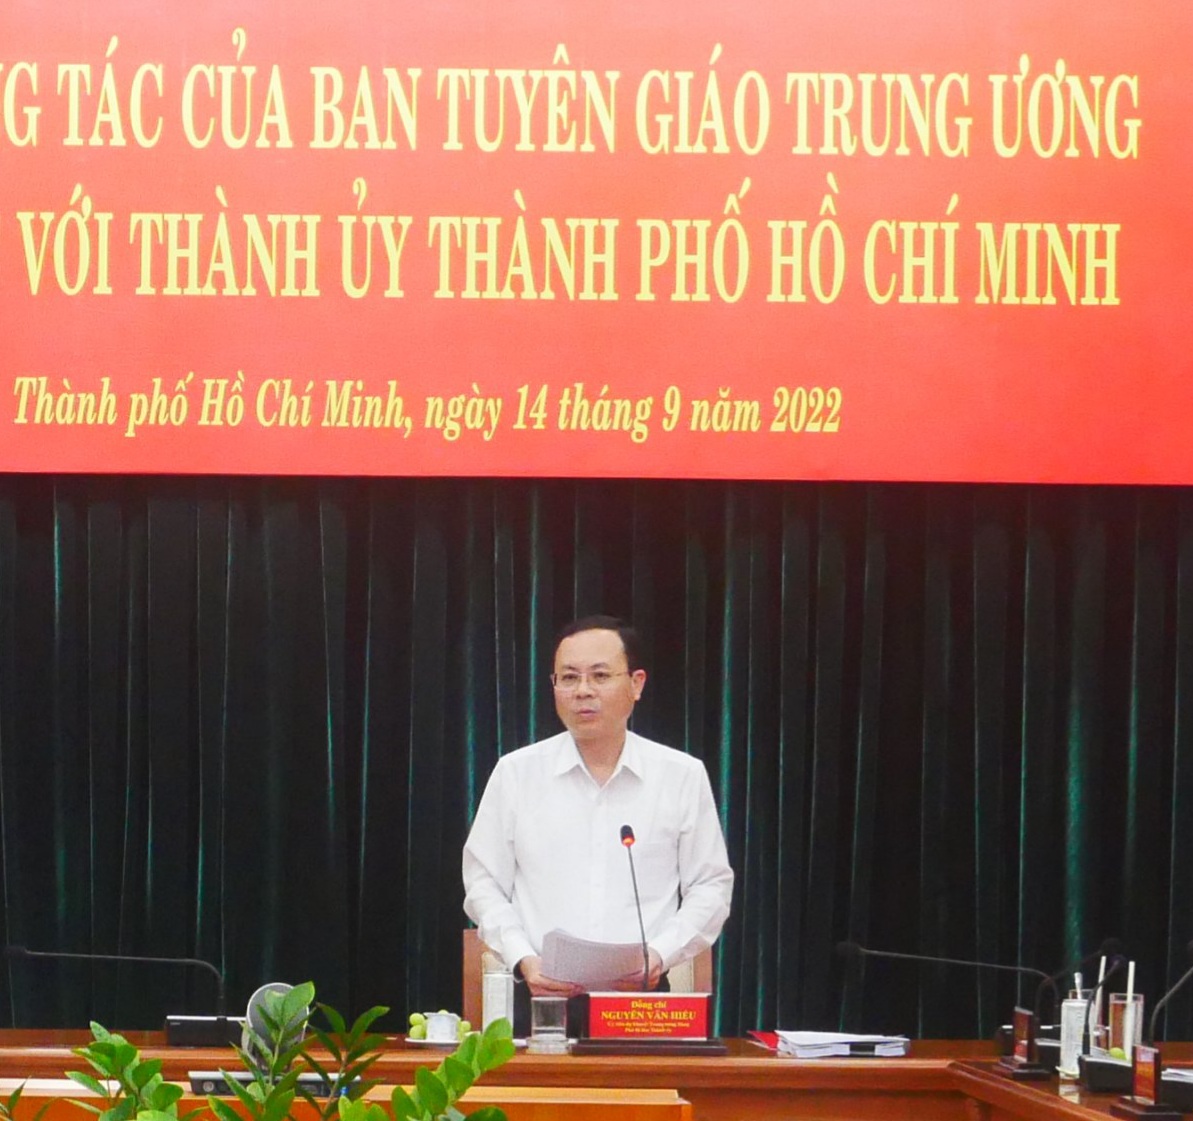 Phó Bí thư Thành ủy TPHCM Nguyễn Văn Hiếu tại cuộc làm việc chiều 14/9